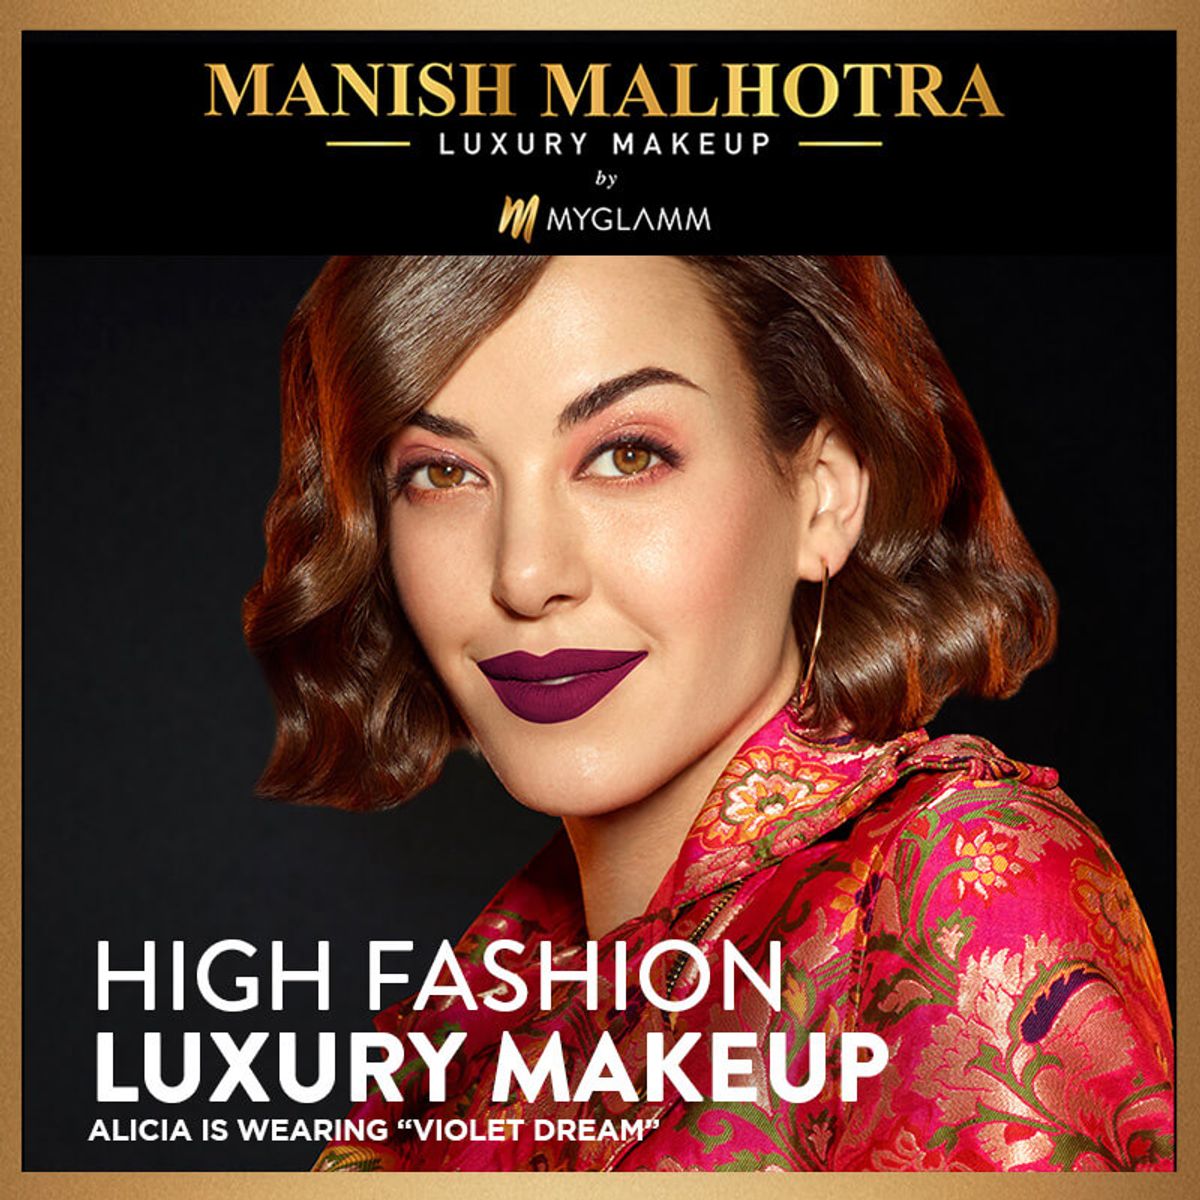 Manish Malhotra Beauty By MyGlamm Soft Matte Lipstick - Sugar Almond ( 4 gm ) ( Full Size )